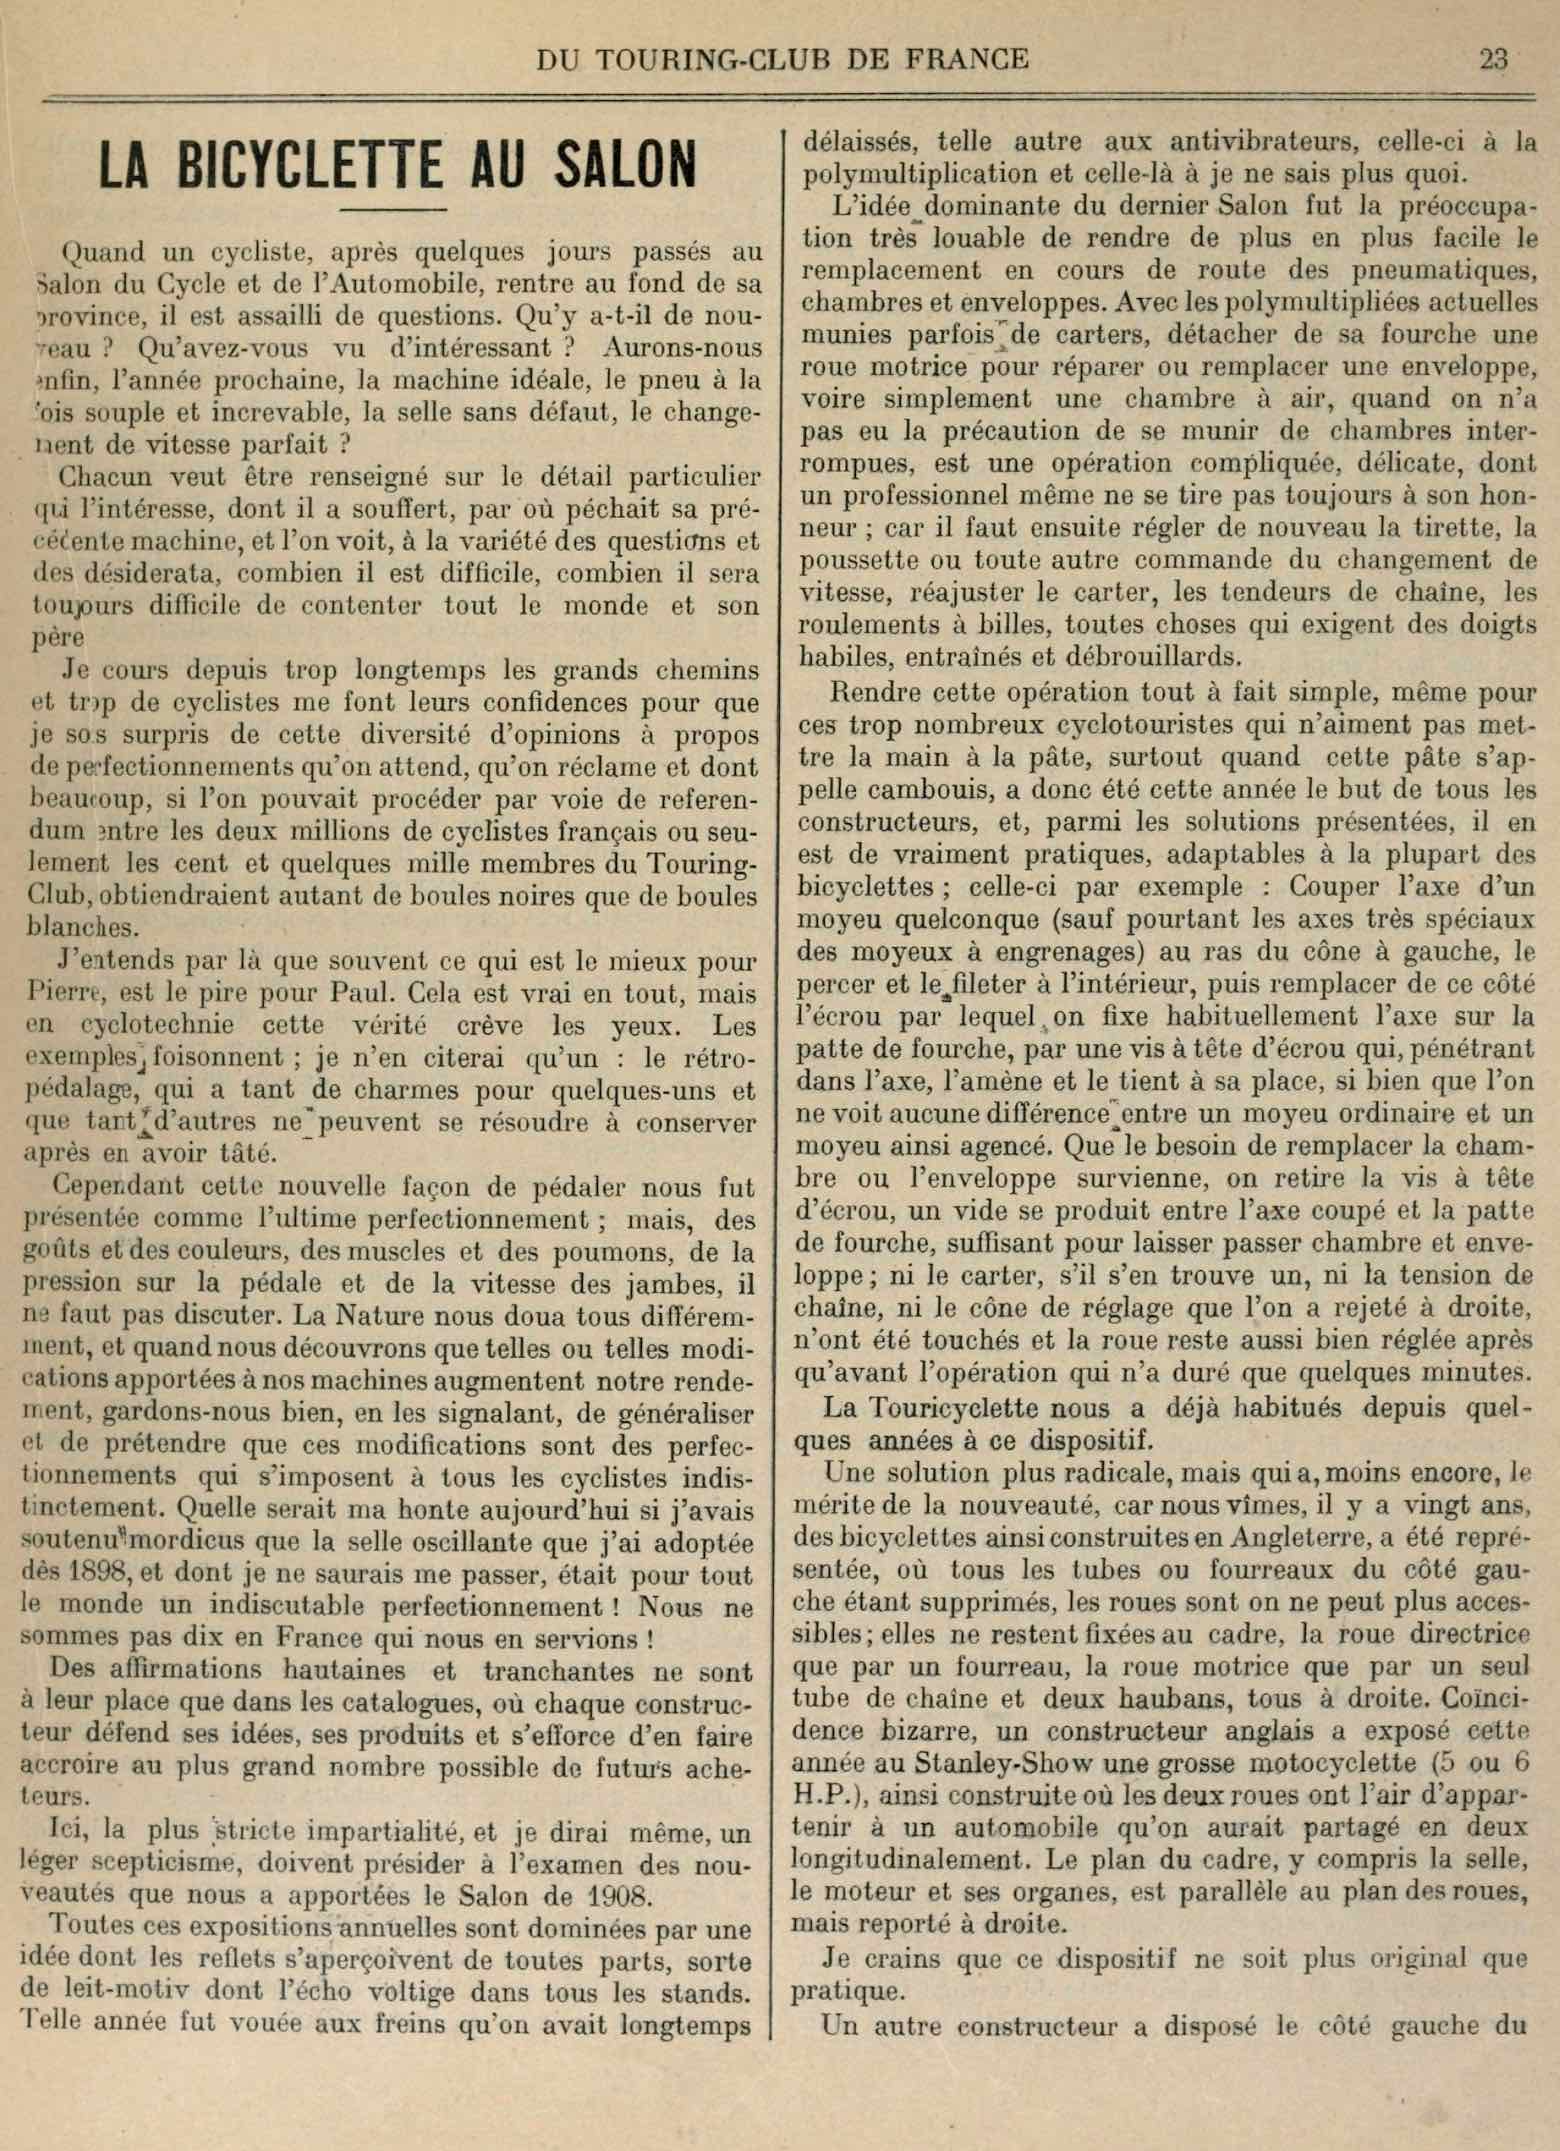 T.C.F. Revue Mensuelle January 1909 - La Bicyclette au Salon (part I) scan 1 main image